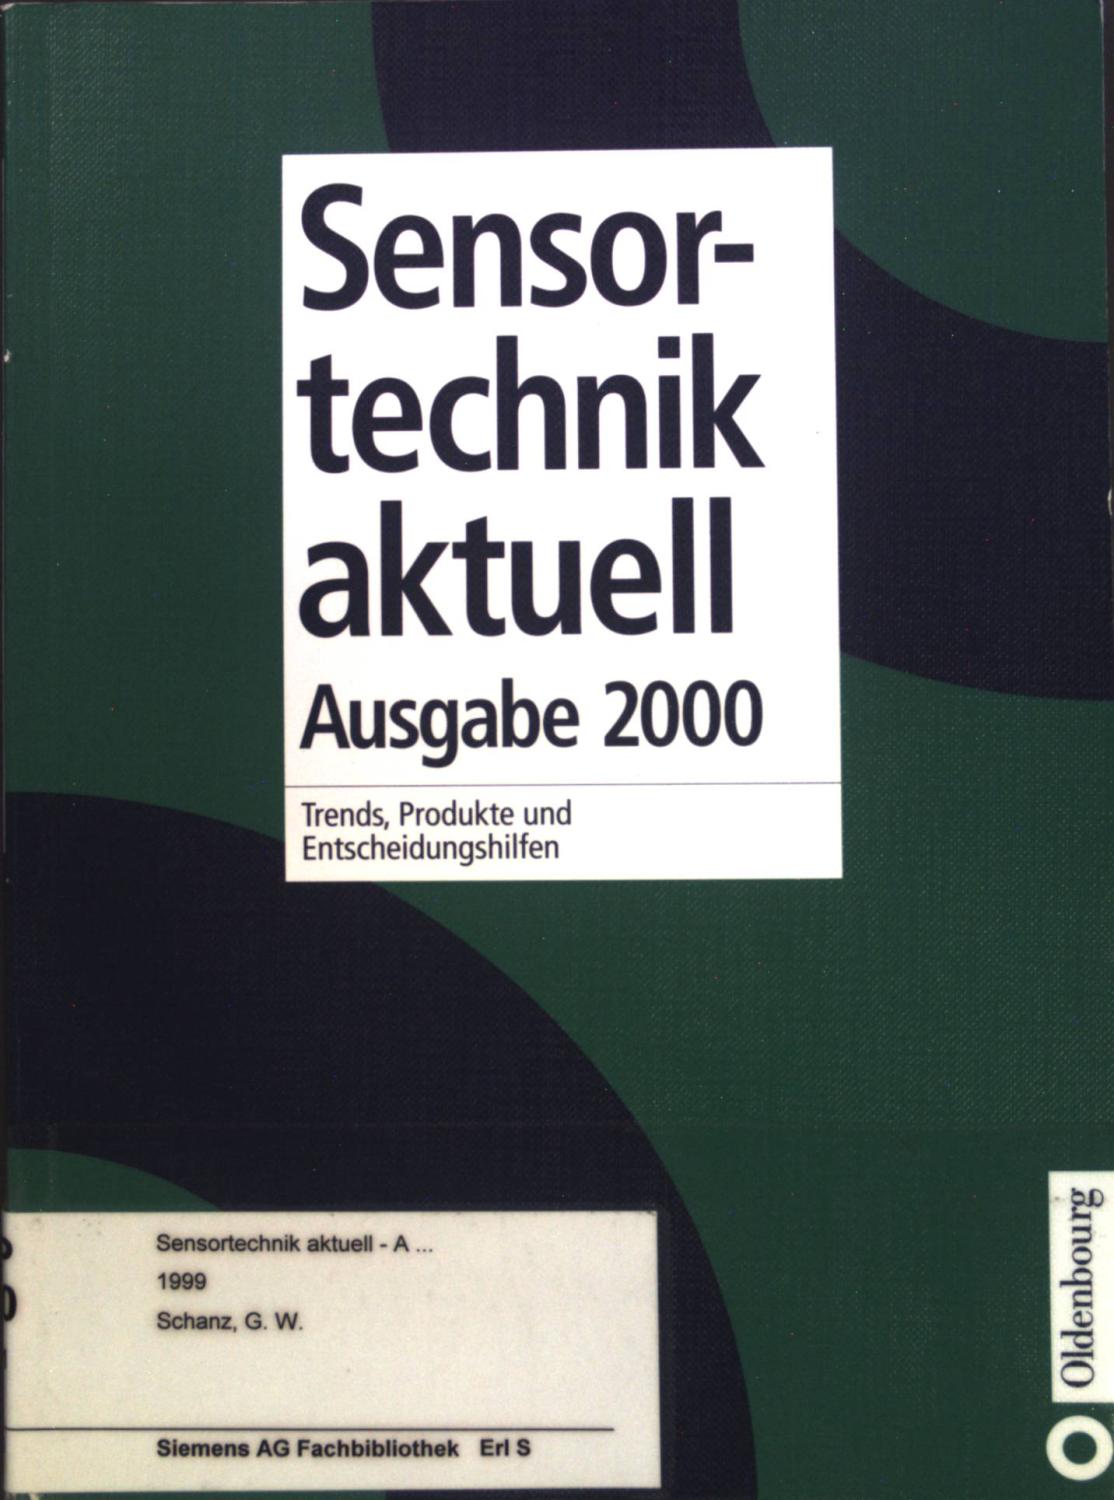 Sensortechnik aktuell : Ausgabe 2000. Trends, Produkte und Entscheidungshilfen. - Schanz, Günther W.